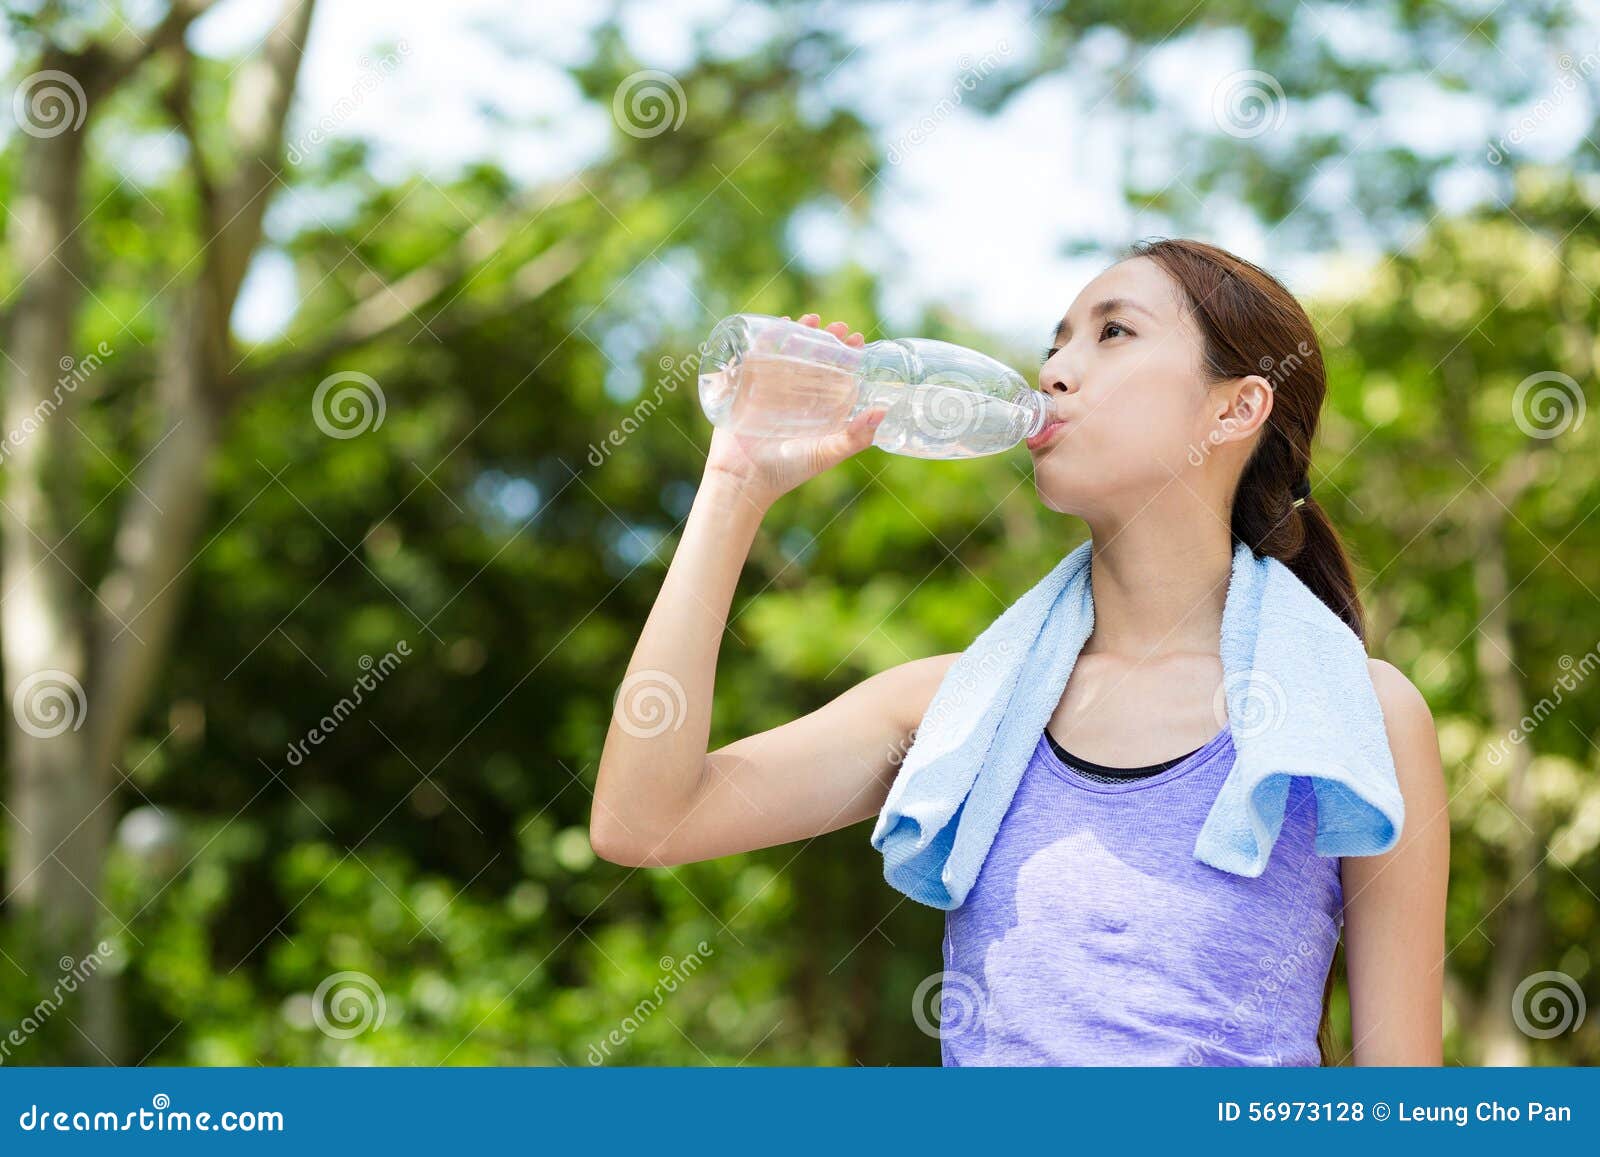 Игры пить воду. Девушка пьет воду. Японец пьет воду. Женщина пьет воду из бутылки. Человек пьет воду.